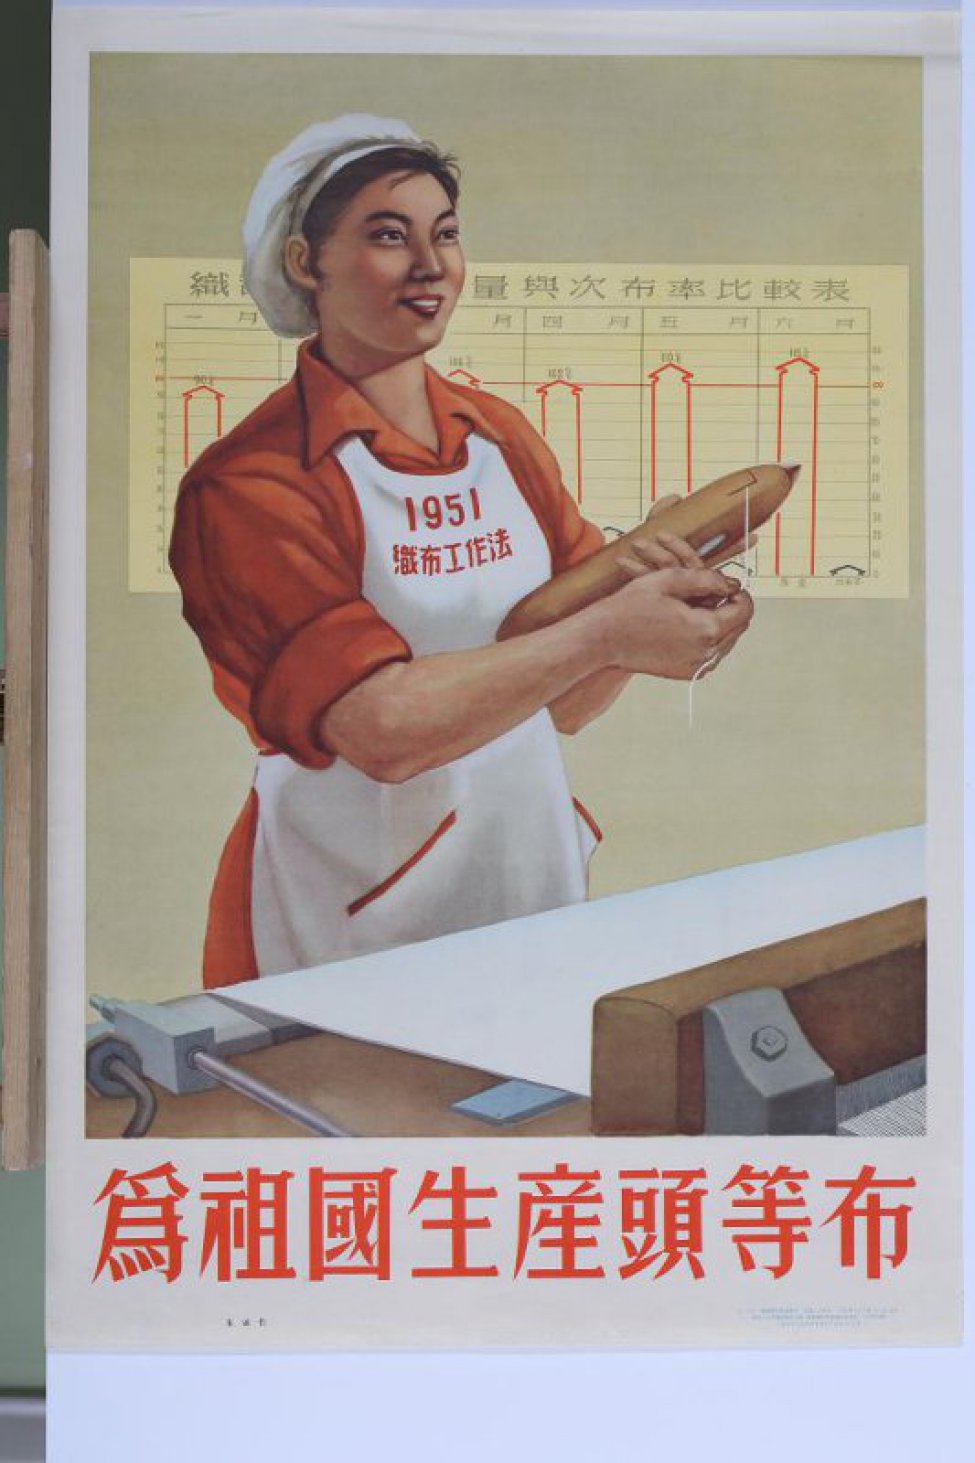 Изображена китайская девушка ткачиха в белом колпаке и белом фартуке, на фартуке цифра "1951". В руках у неё челнок, стоит около ткацкого станка. За ней на стене диаграмма. Под плакатом надпись из восьми иероглифов.